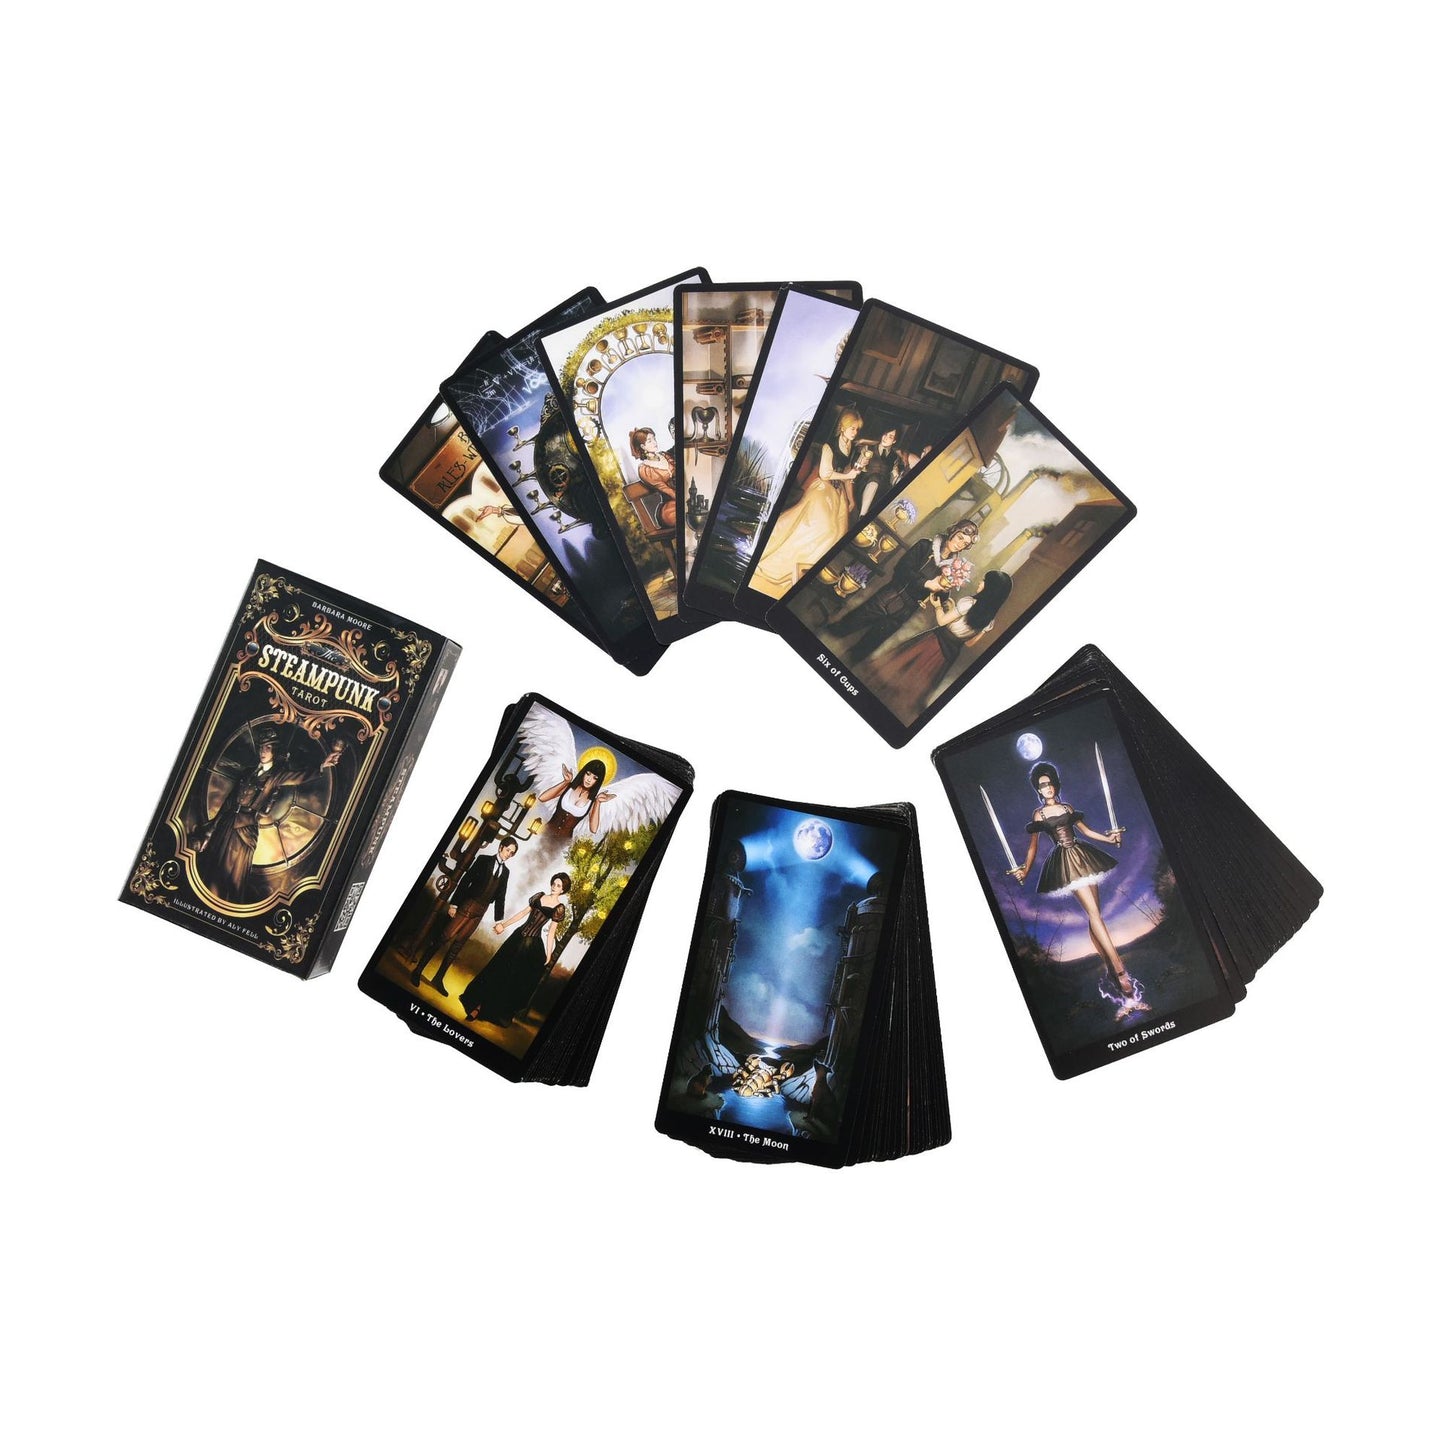 Maramalive™ Steampunk Tarot Game Card Maramalive™Steampunk Tarot Game Card Maramalive™Steampunk Tarot Game Card Maramalive™Steampunk Tarot Game Card Maramalive™Steampunk Tarot Game Card.